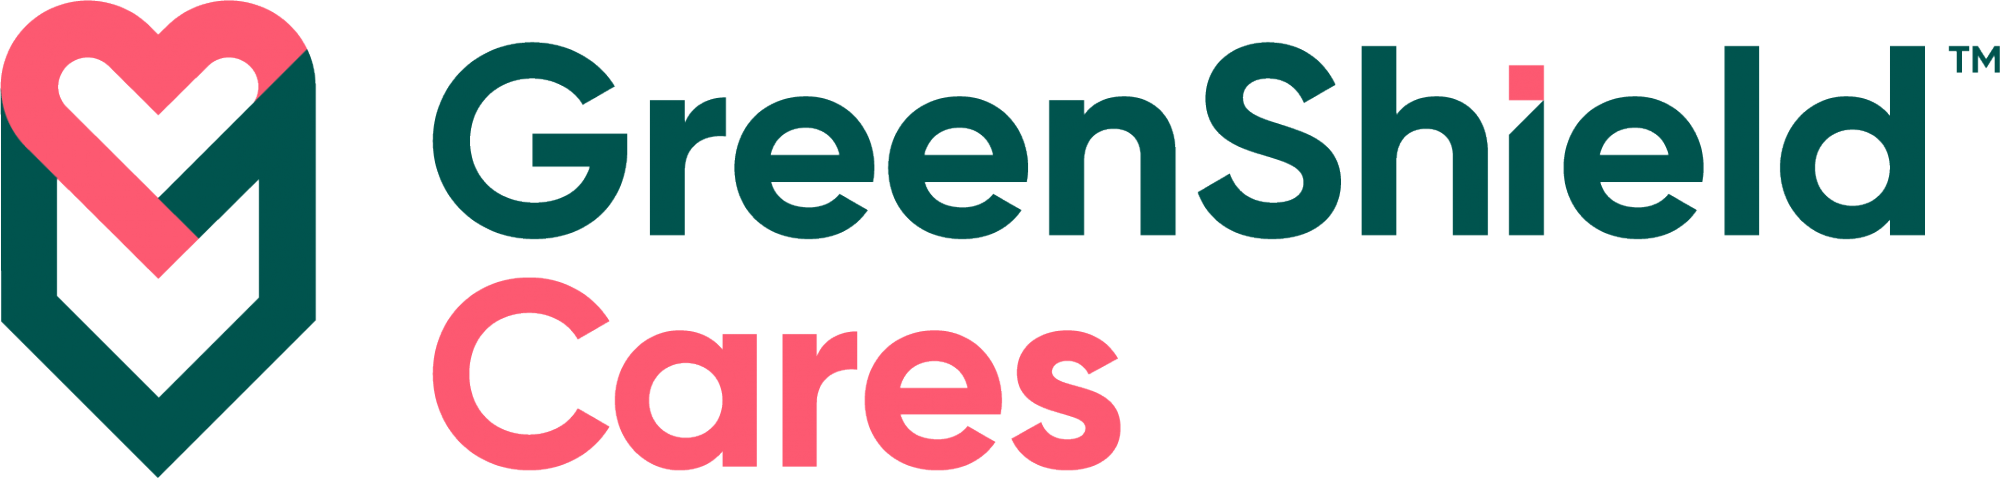 Green Shield Cares logos